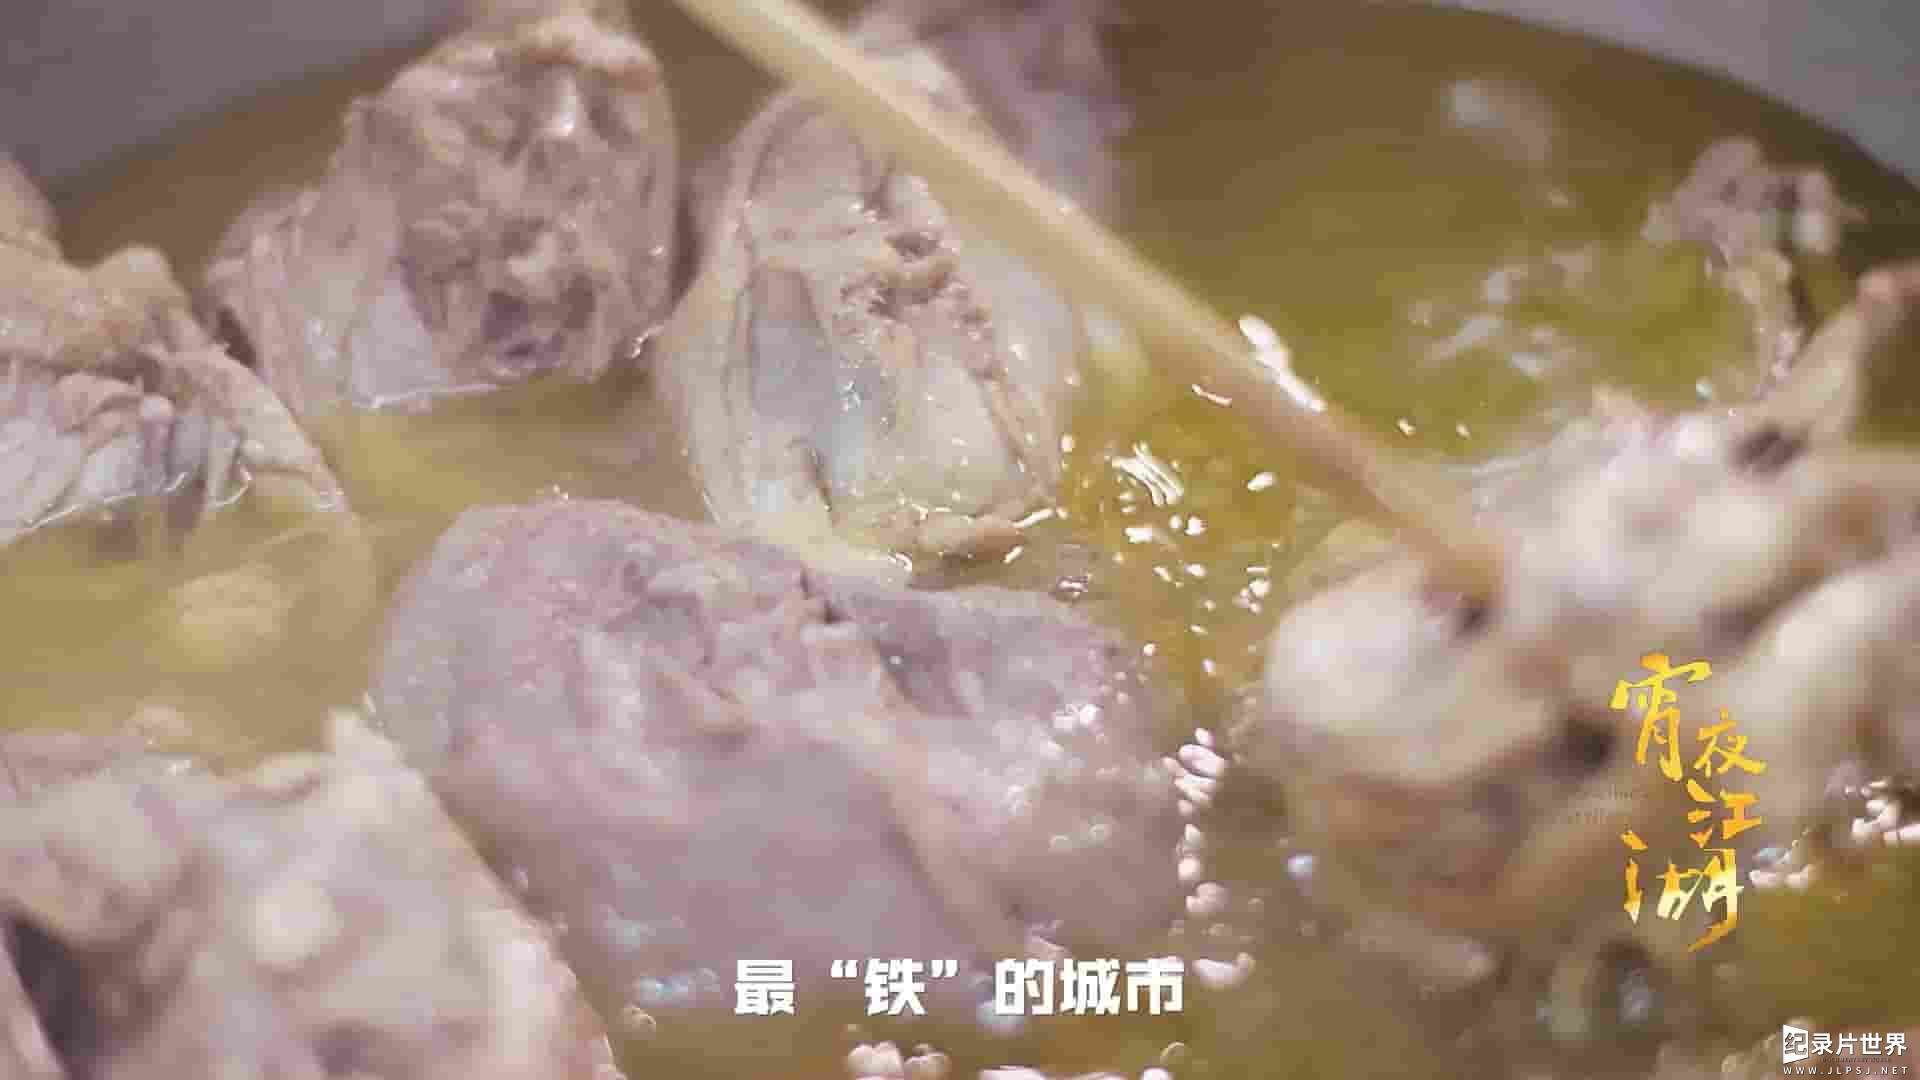 国产纪录片《夜宵江湖 Taste Humanity at Night 2019》全8集 